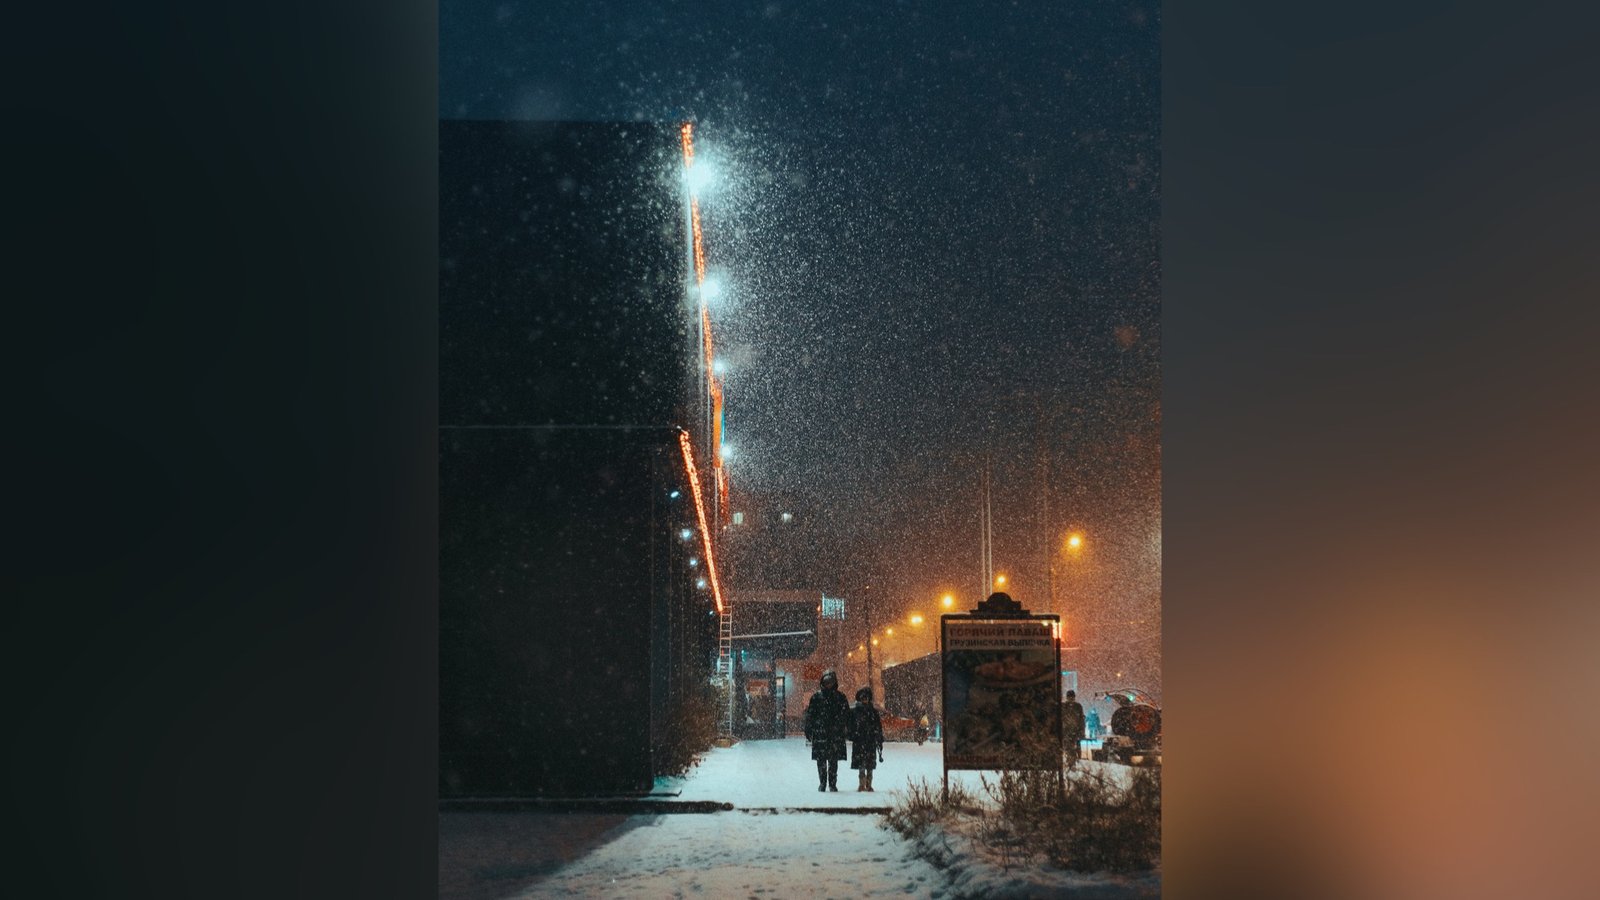 А нам некогда скучать, скоро будем отмечать: топ фотографий зимнего Днепра в Instagram